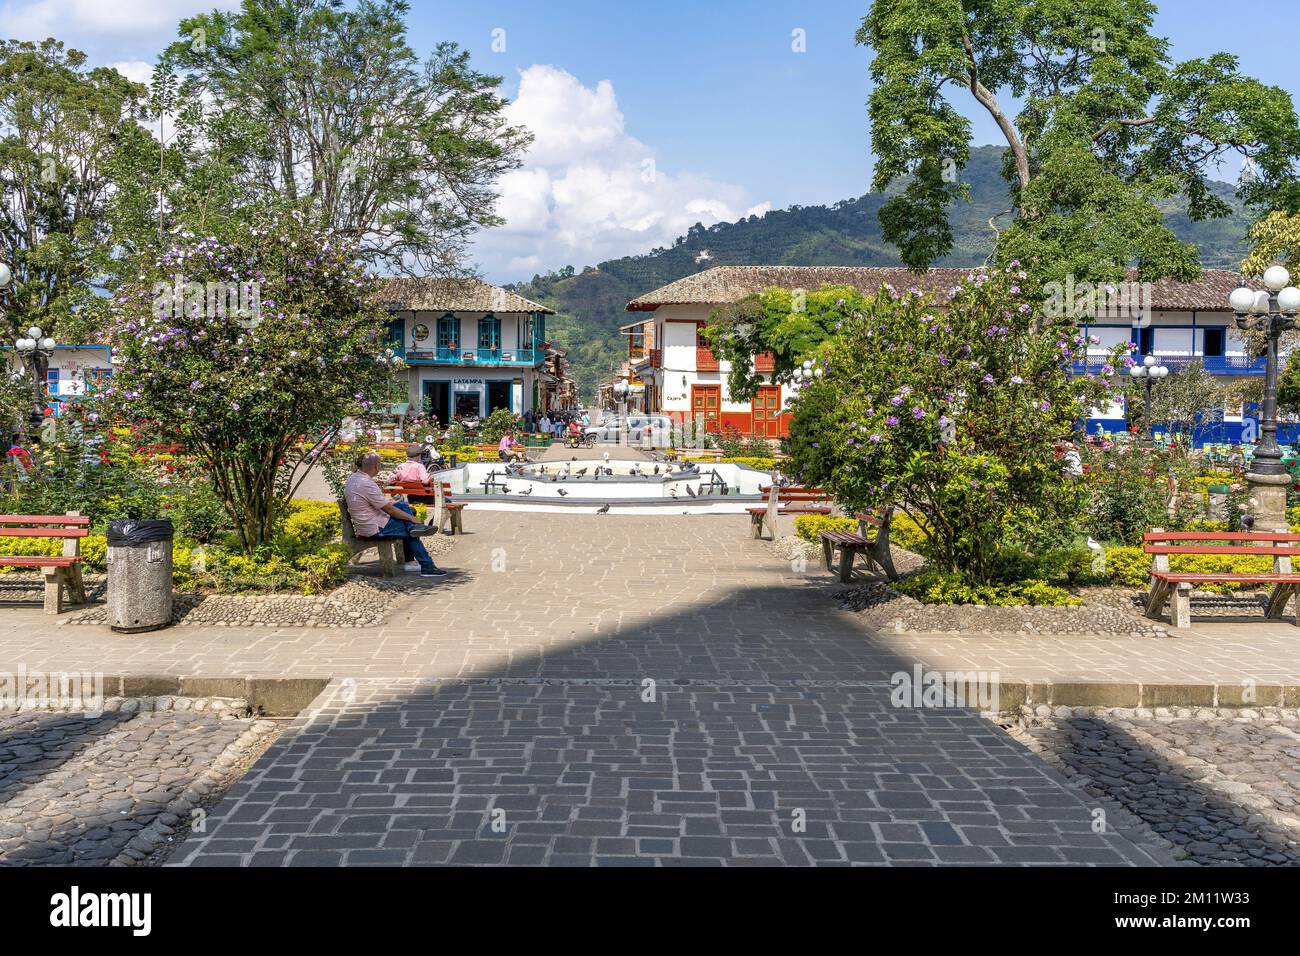 South America, Colombia, Departamento de Antioquia, Colombian Andes, Jardín, everyday scene in Parque Principal Libertadores Stock Photo